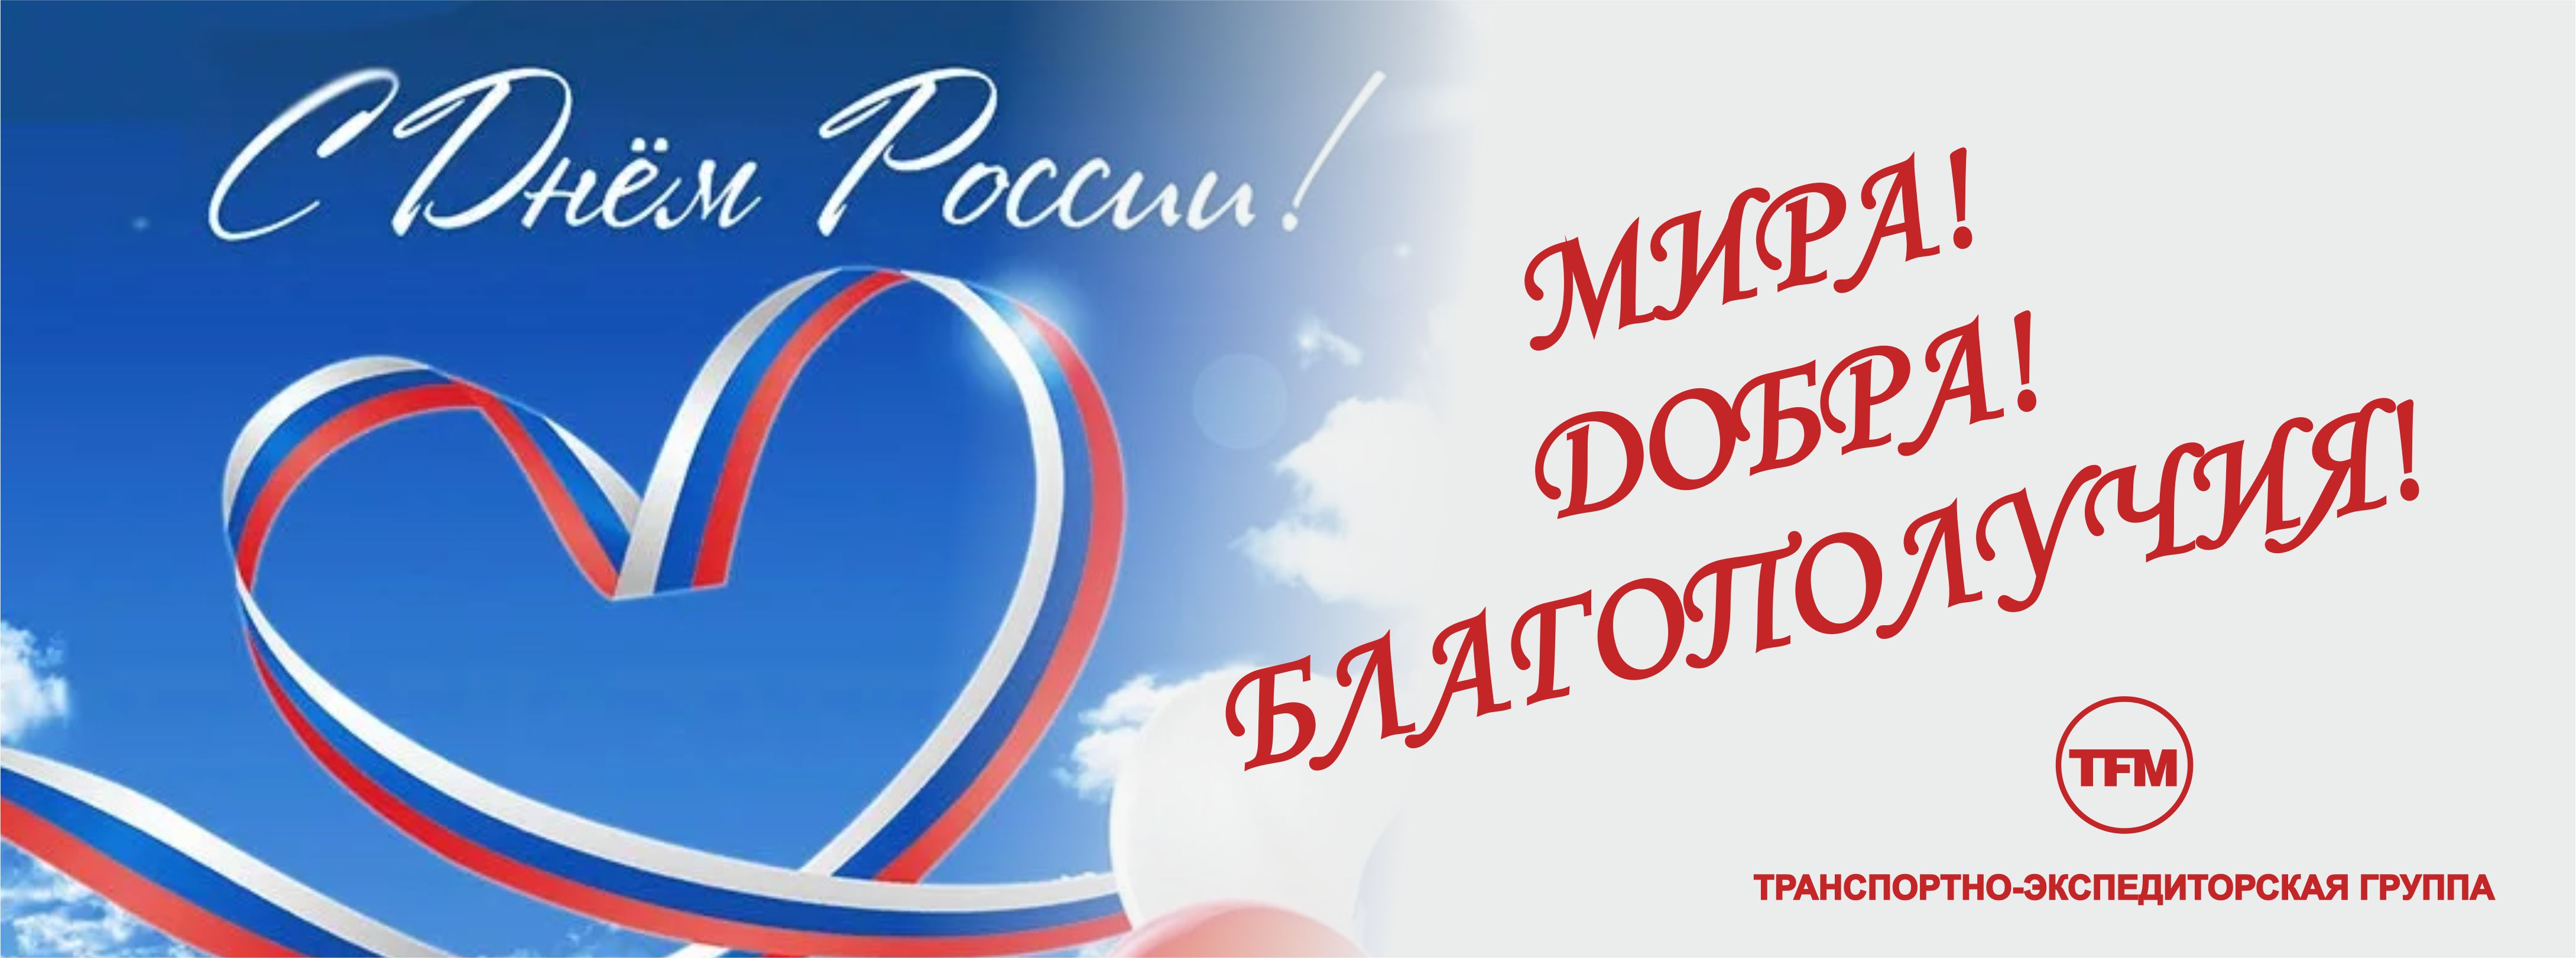 Поздравляем С Днем России!